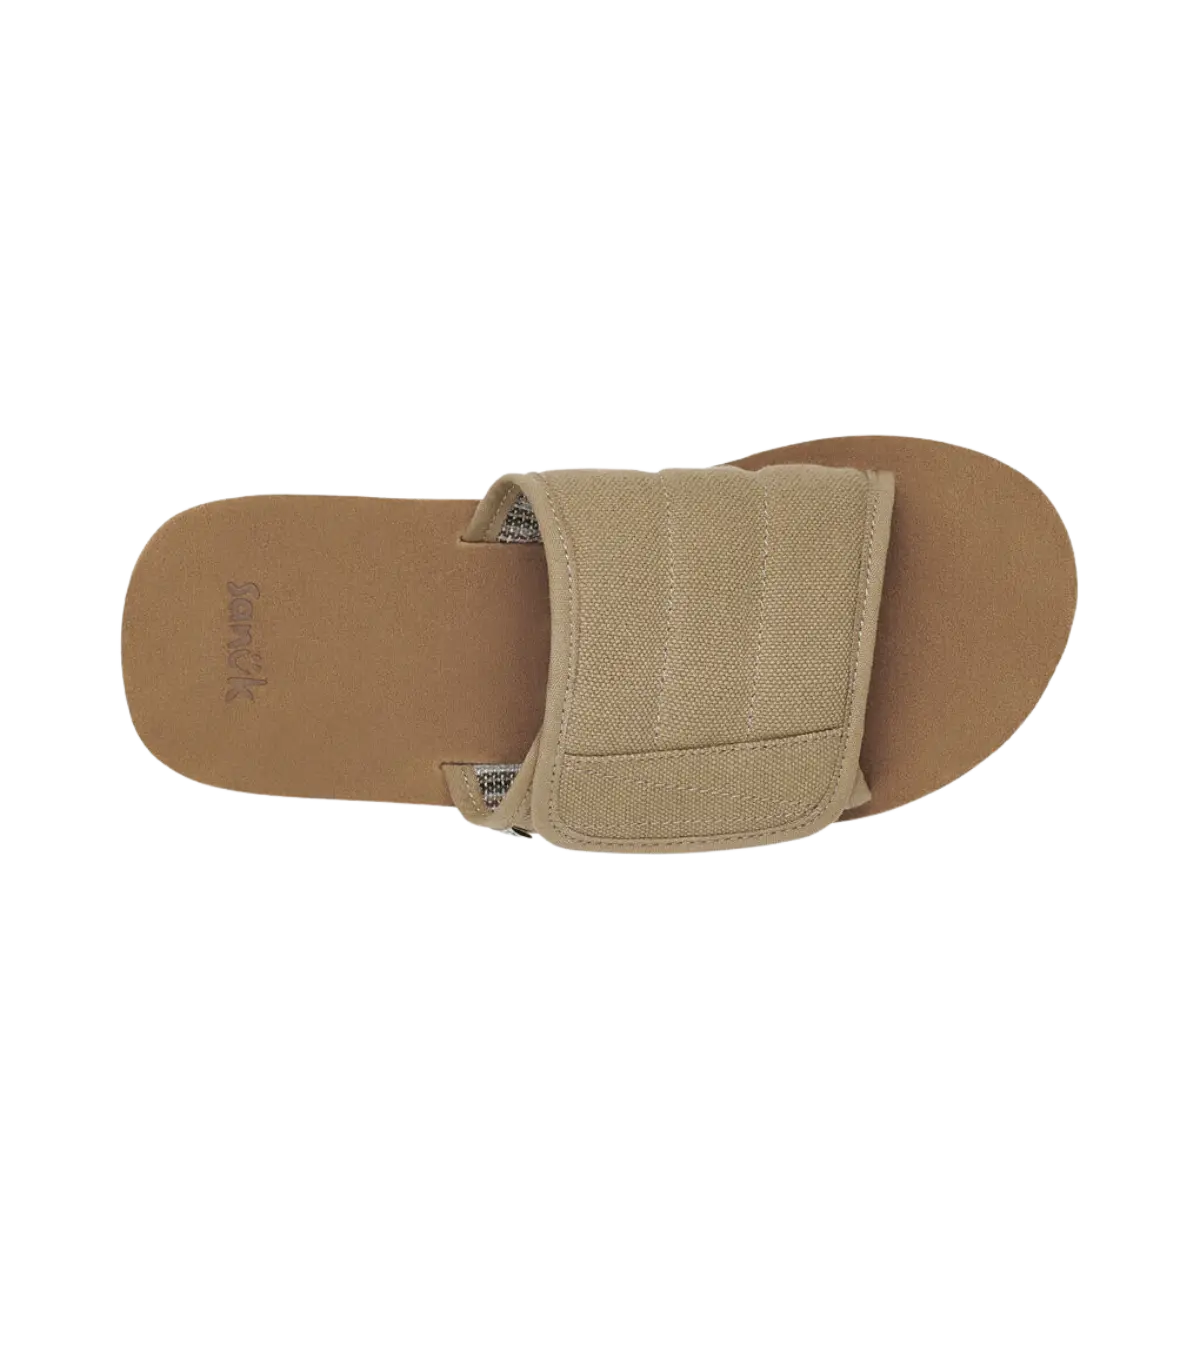 Sanuk Flip Flops Mens Brown Woven Textured Comfort Sandal Slipper Natural  Yogi 3